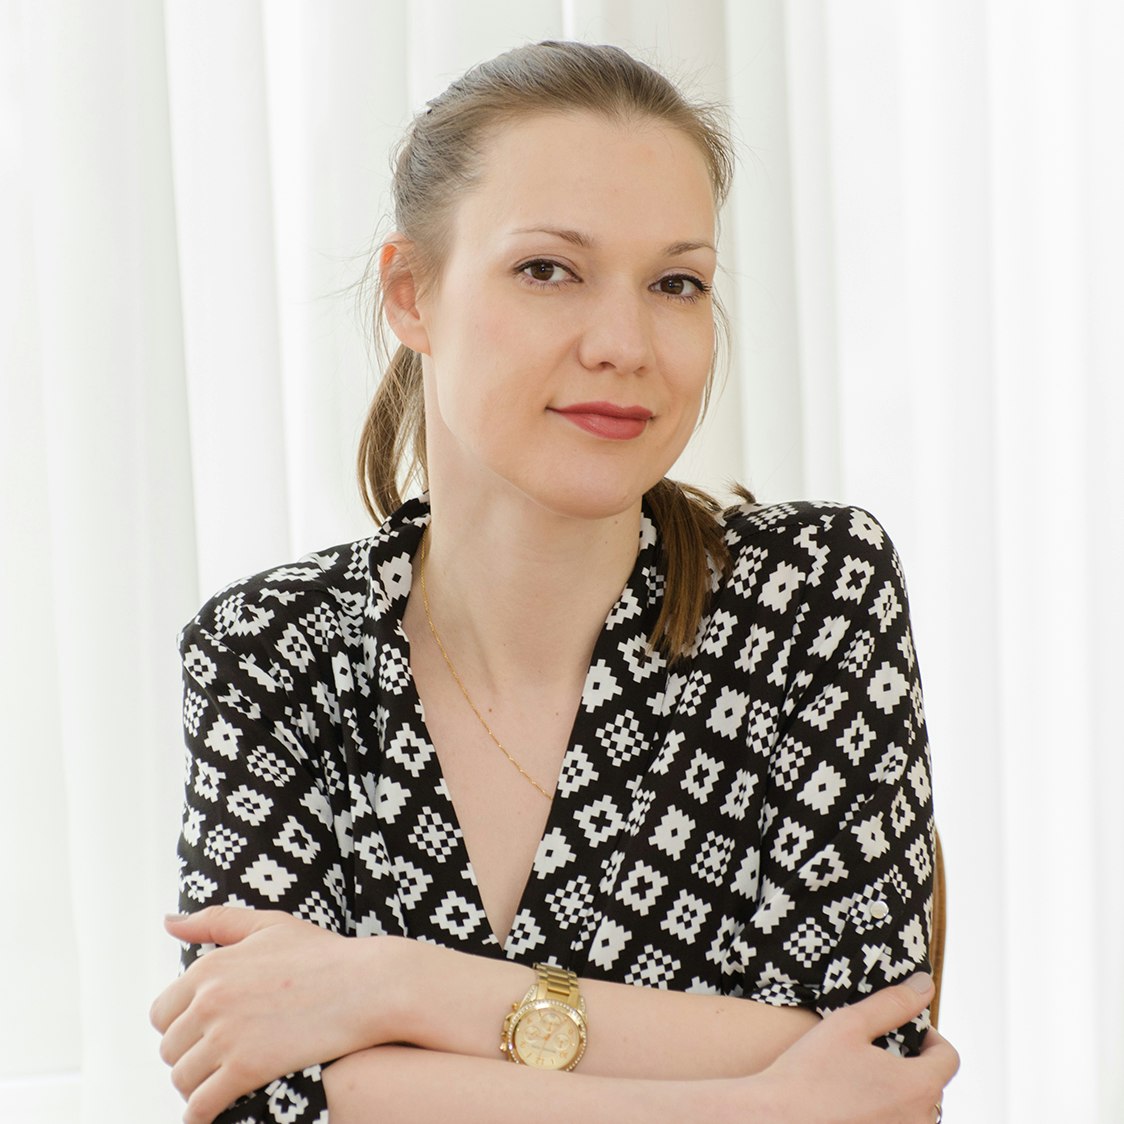 Portrait of Smaznova Iryna